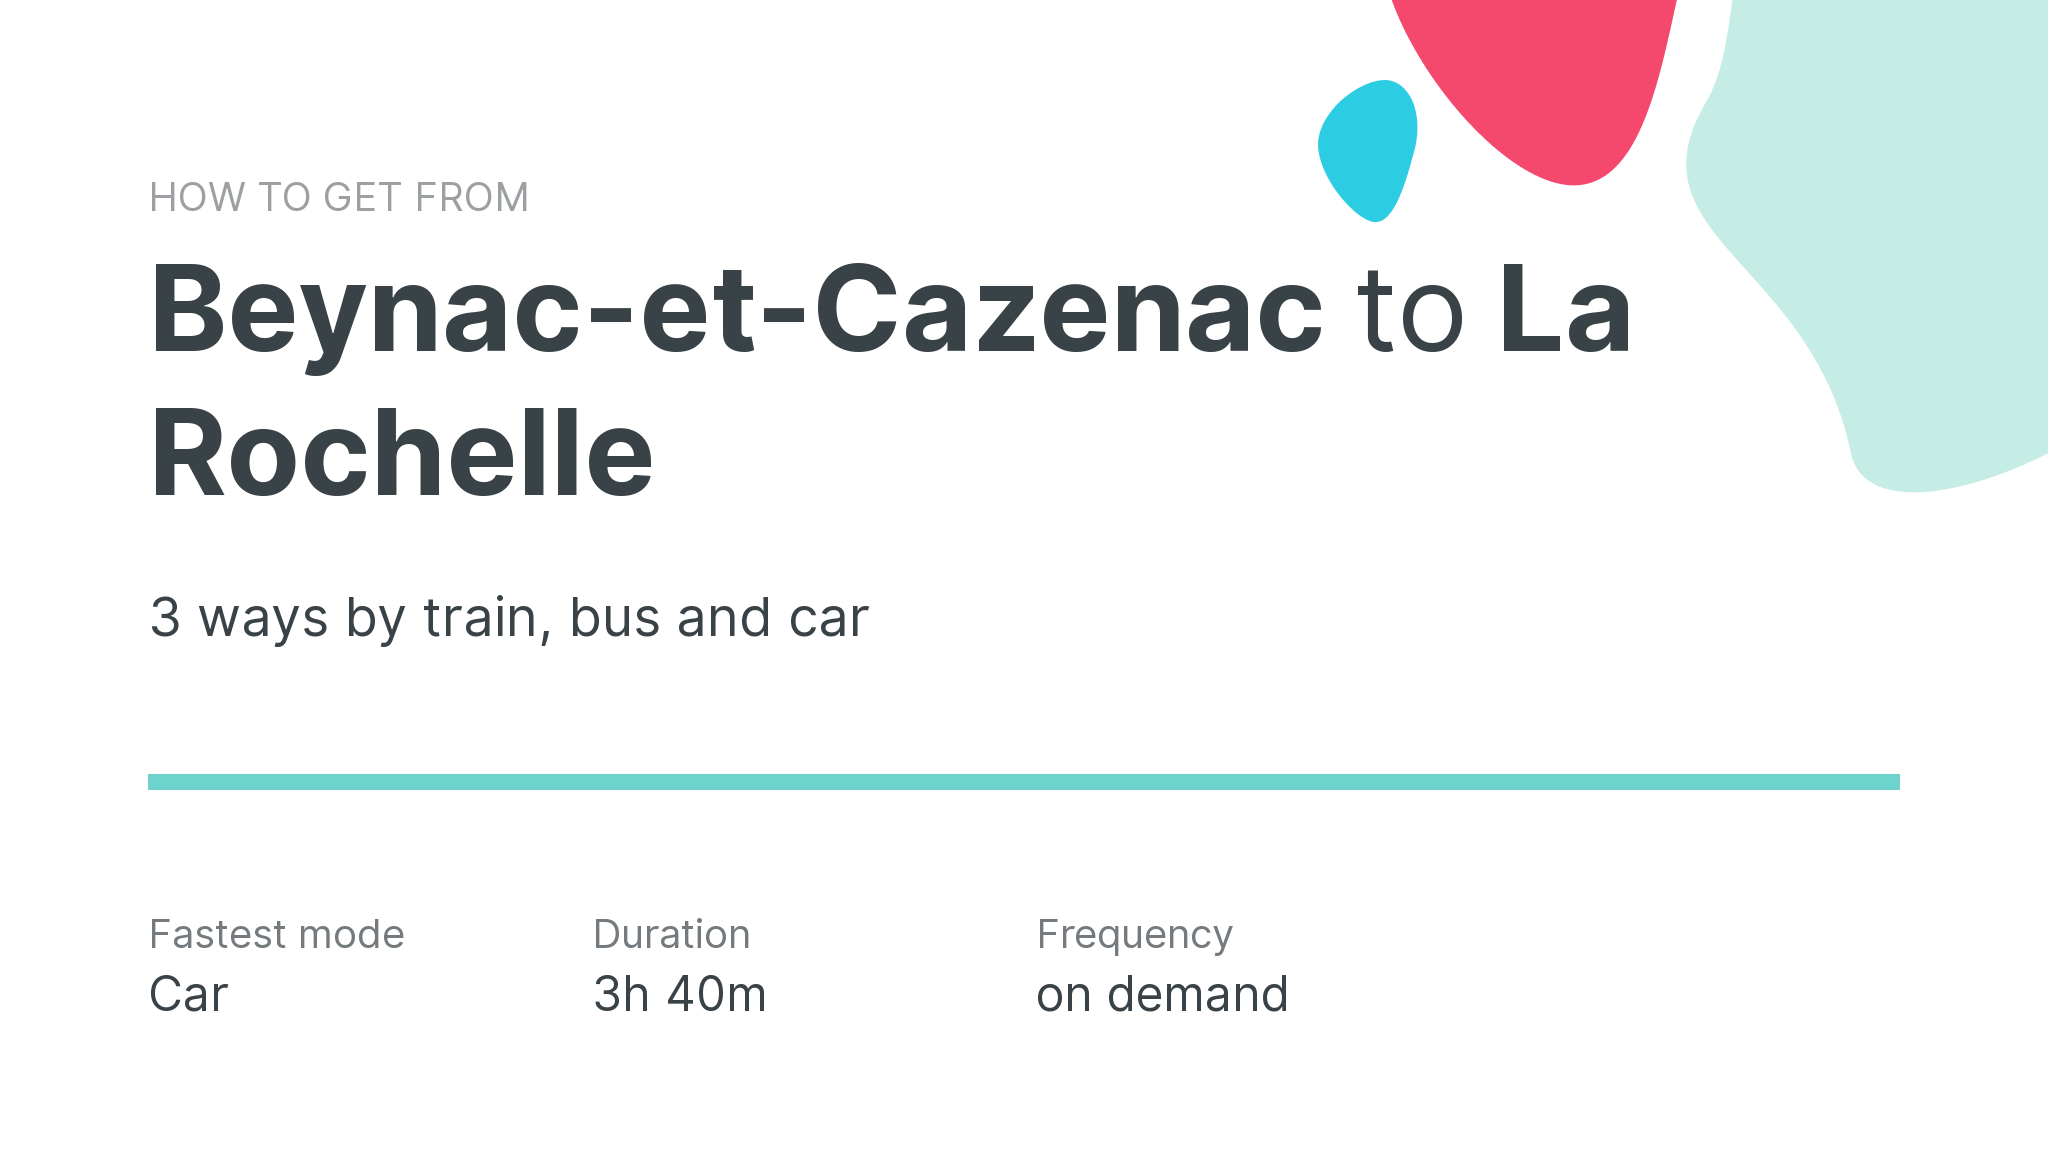 How do I get from Beynac-et-Cazenac to La Rochelle